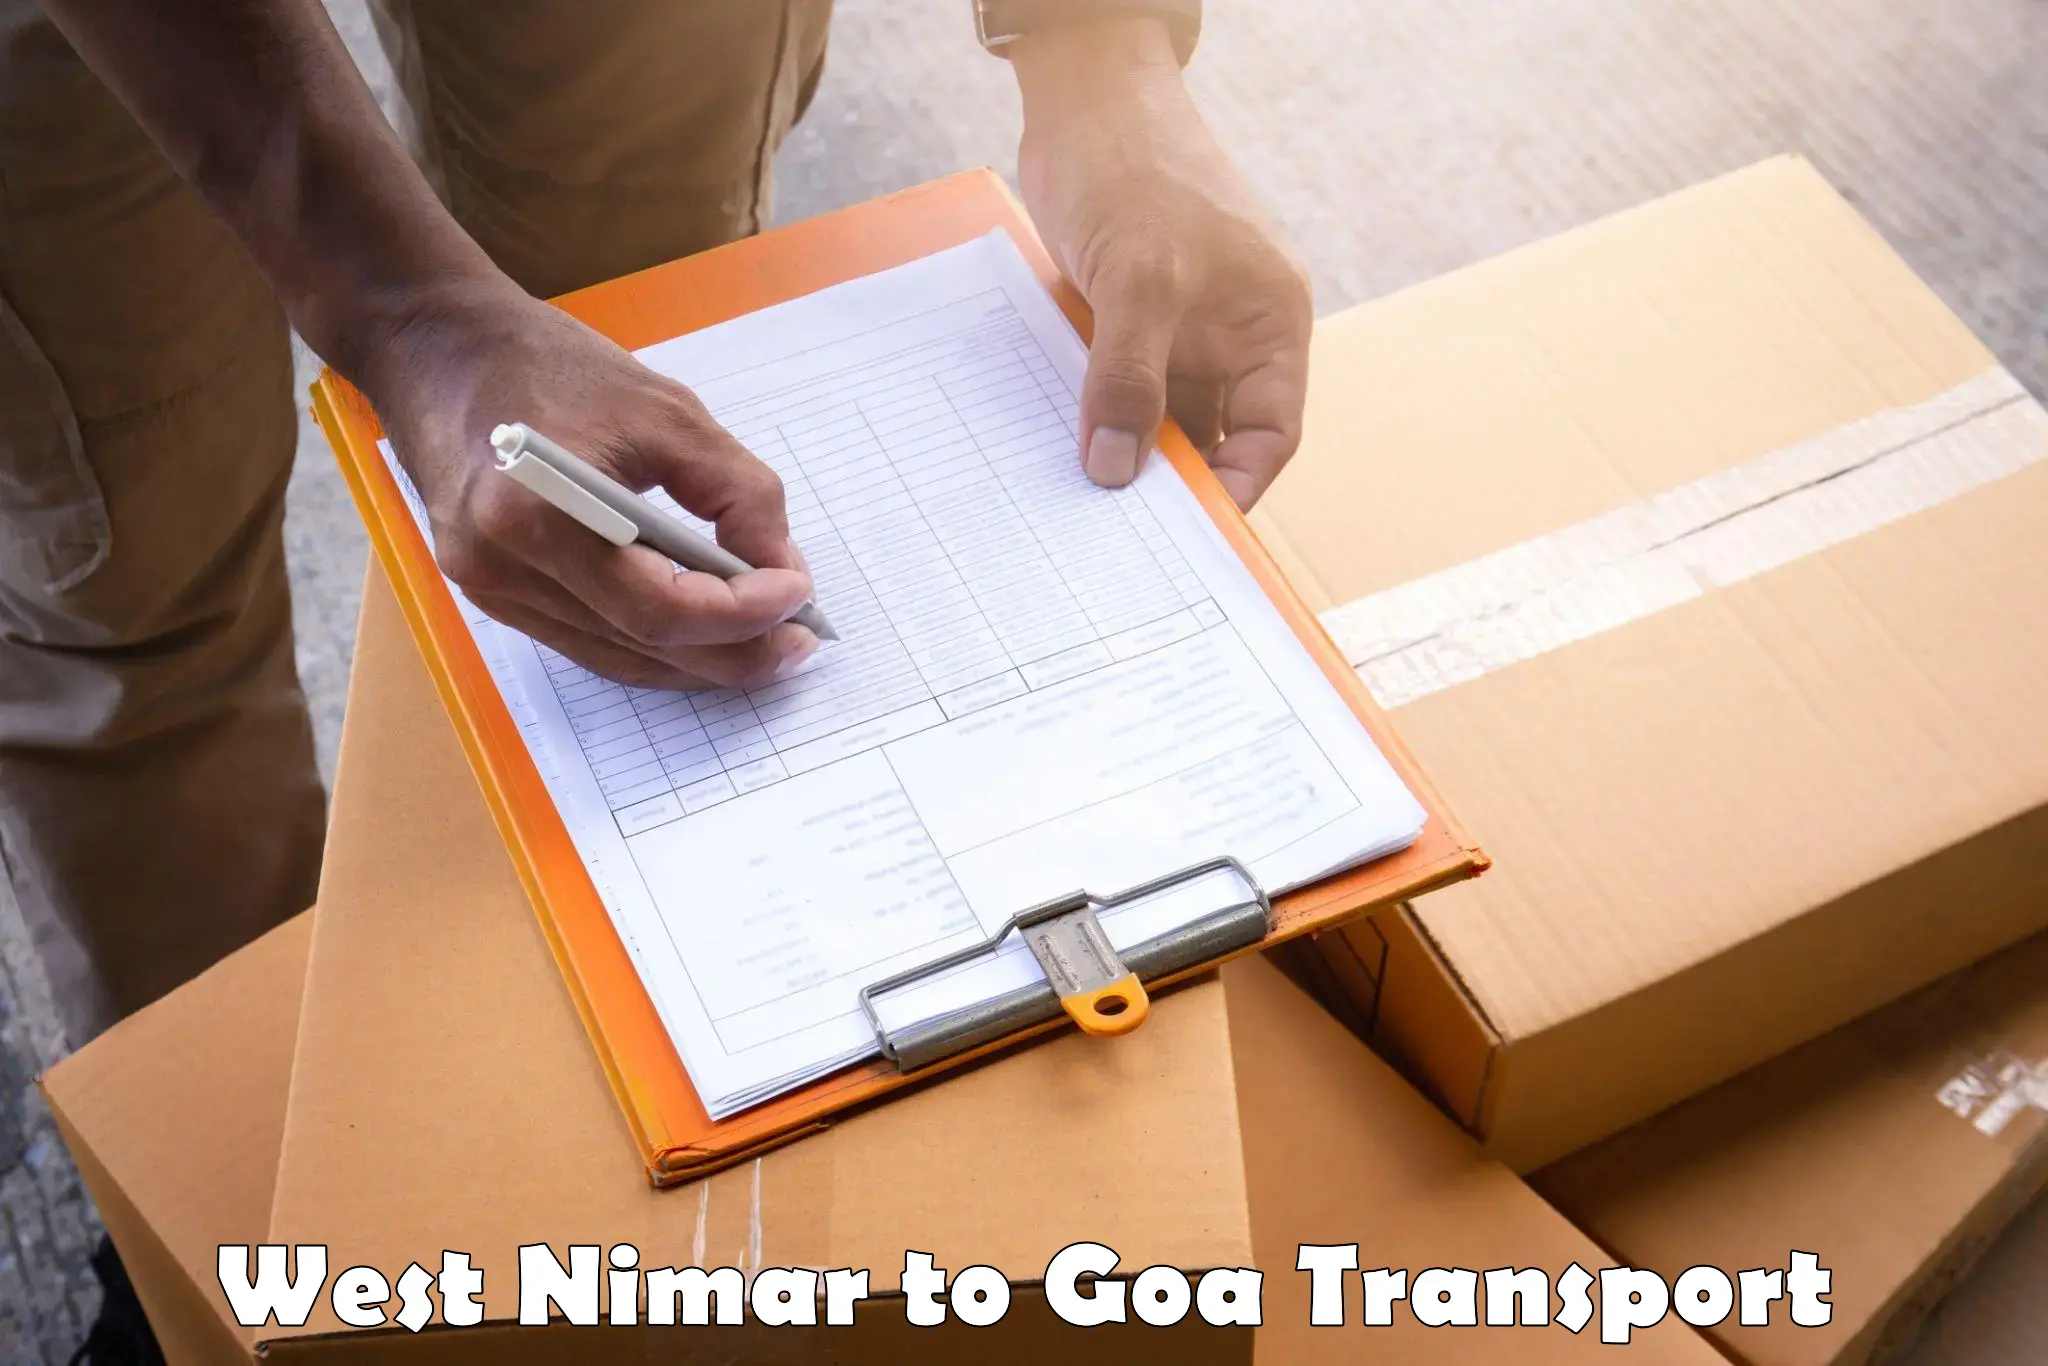 Online transport service West Nimar to IIT Goa